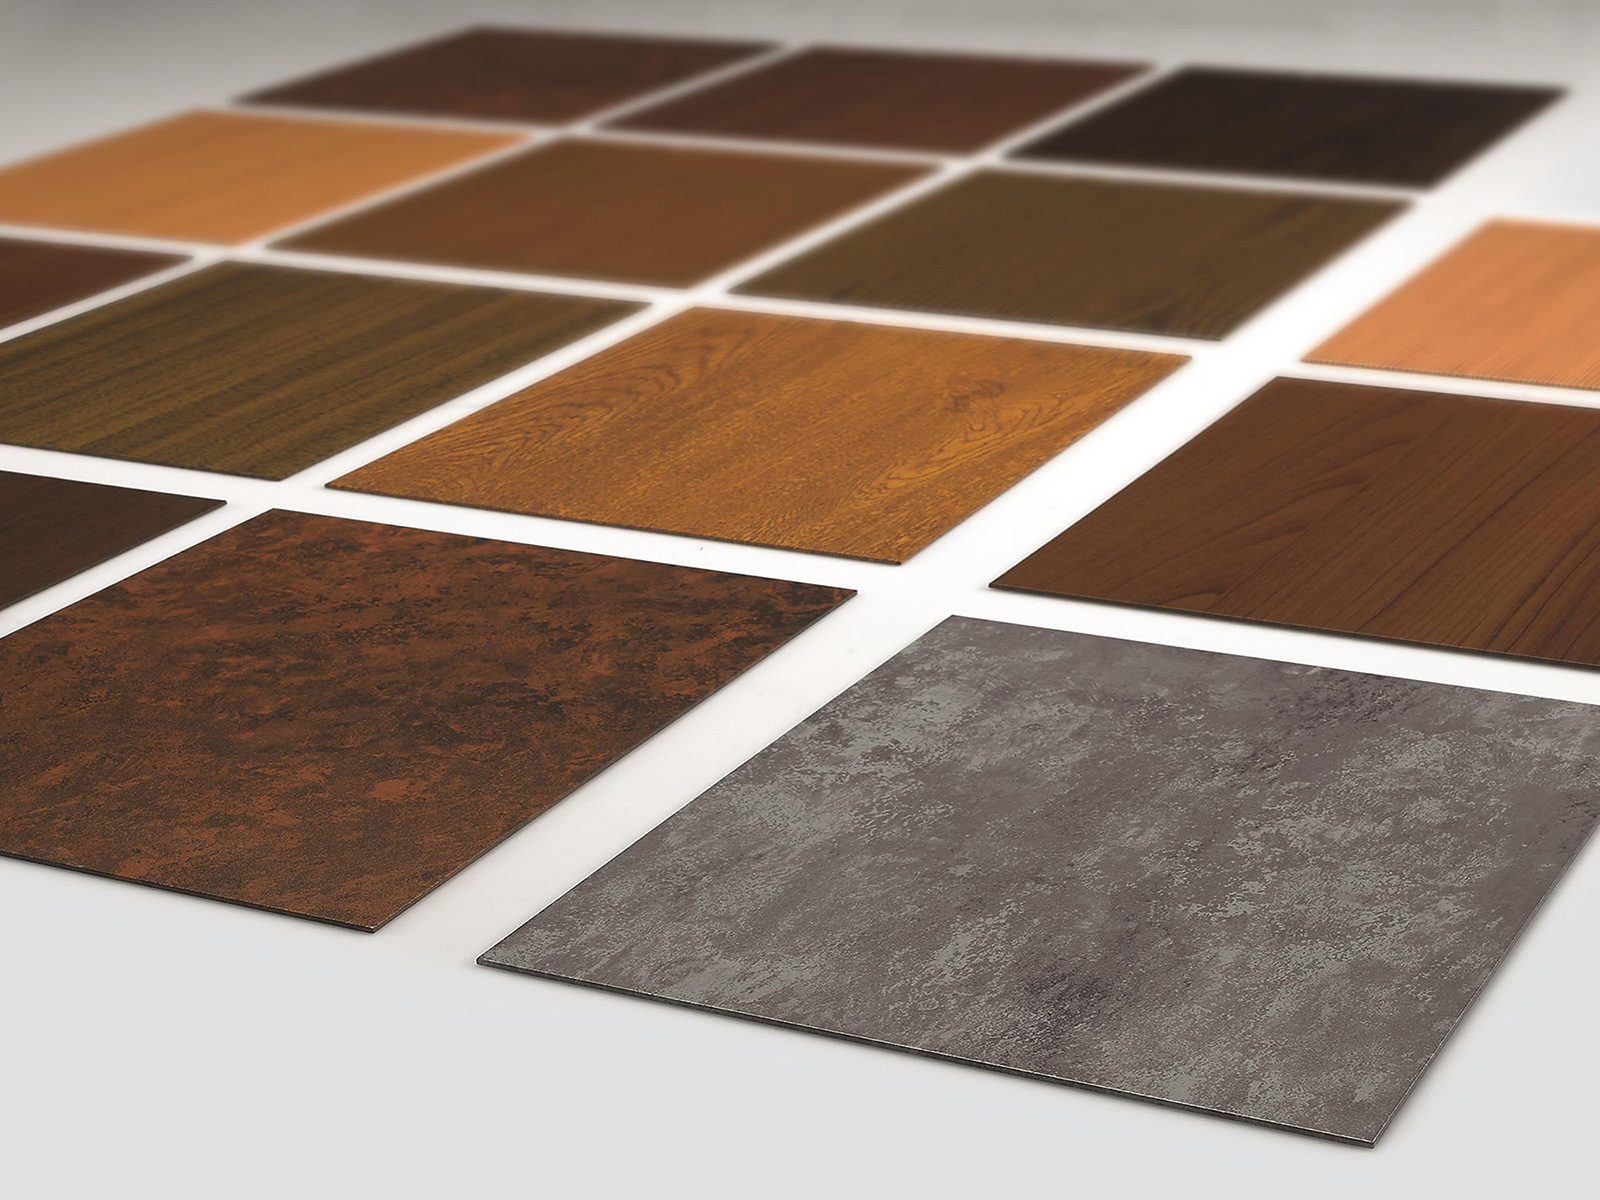 Různé designy metody nanášení povrchové úpravy heroal SD nabízí ušlechtilý dřevěný a betonový vzhled. Realizovat lze téměř jakýkoli požadovaný design. Foto: heroal